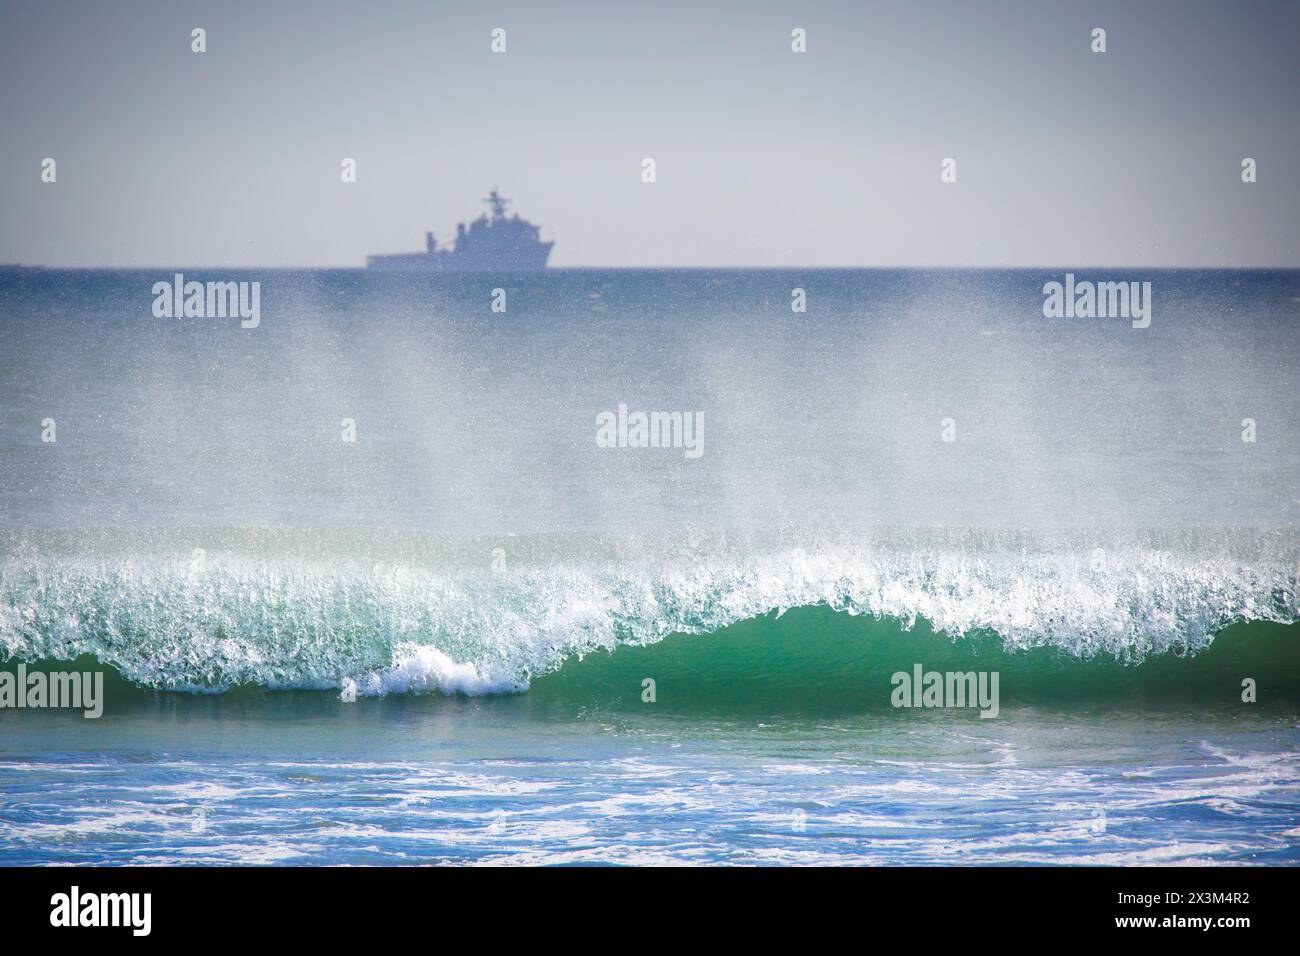 Der Pazifik-Ozean-Surf rollt ein, während ein Navy-Schiff am fernen Horizont in Coronado, Kalifornien, sitzt. Stockfoto